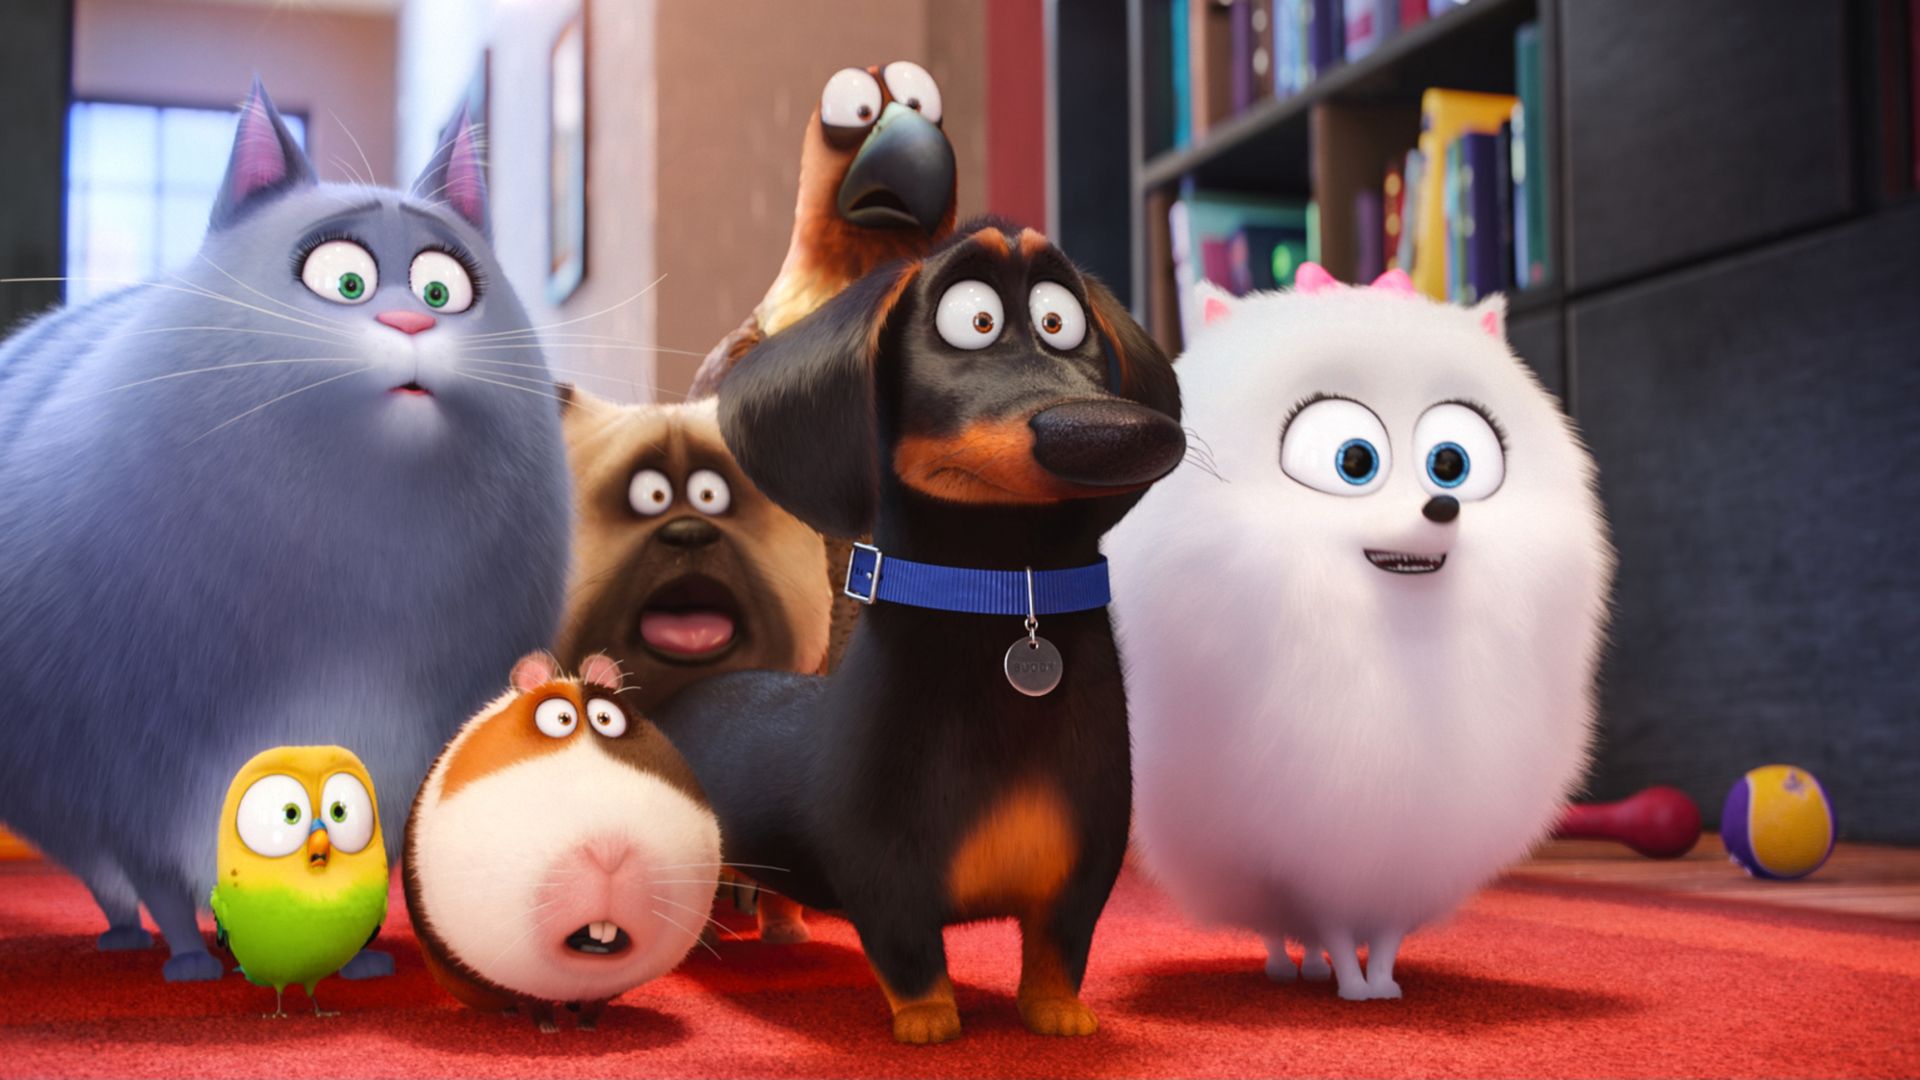 Тайная жизнь домашних животных, собака, пес, Лучшие мультфильмы 2016, The Secret Life of Pets, dog, Best Animation Movies of 2016, cartoon (horizontal)